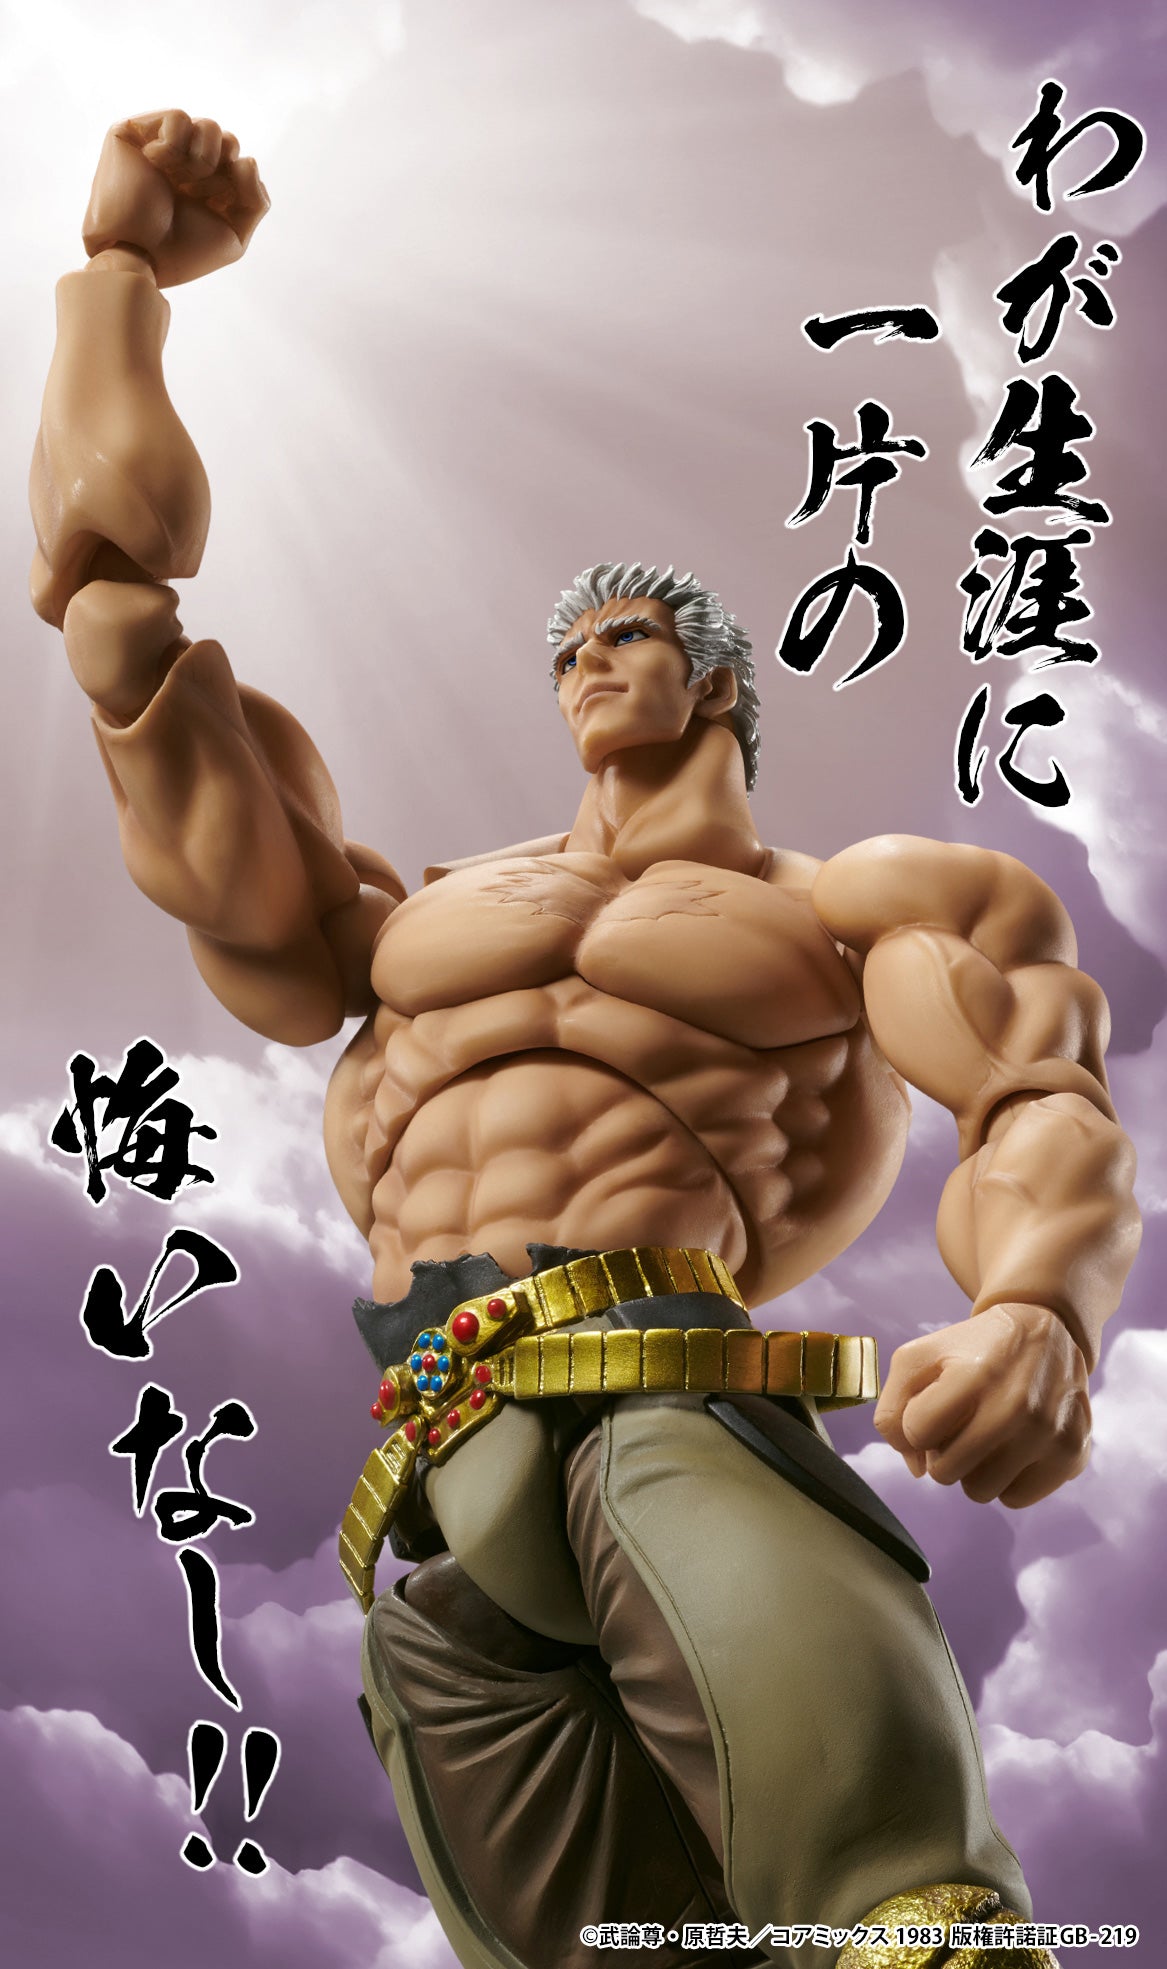 Super Action Statue "Fist of the North Star" Raoh Muso Tensei Ver.